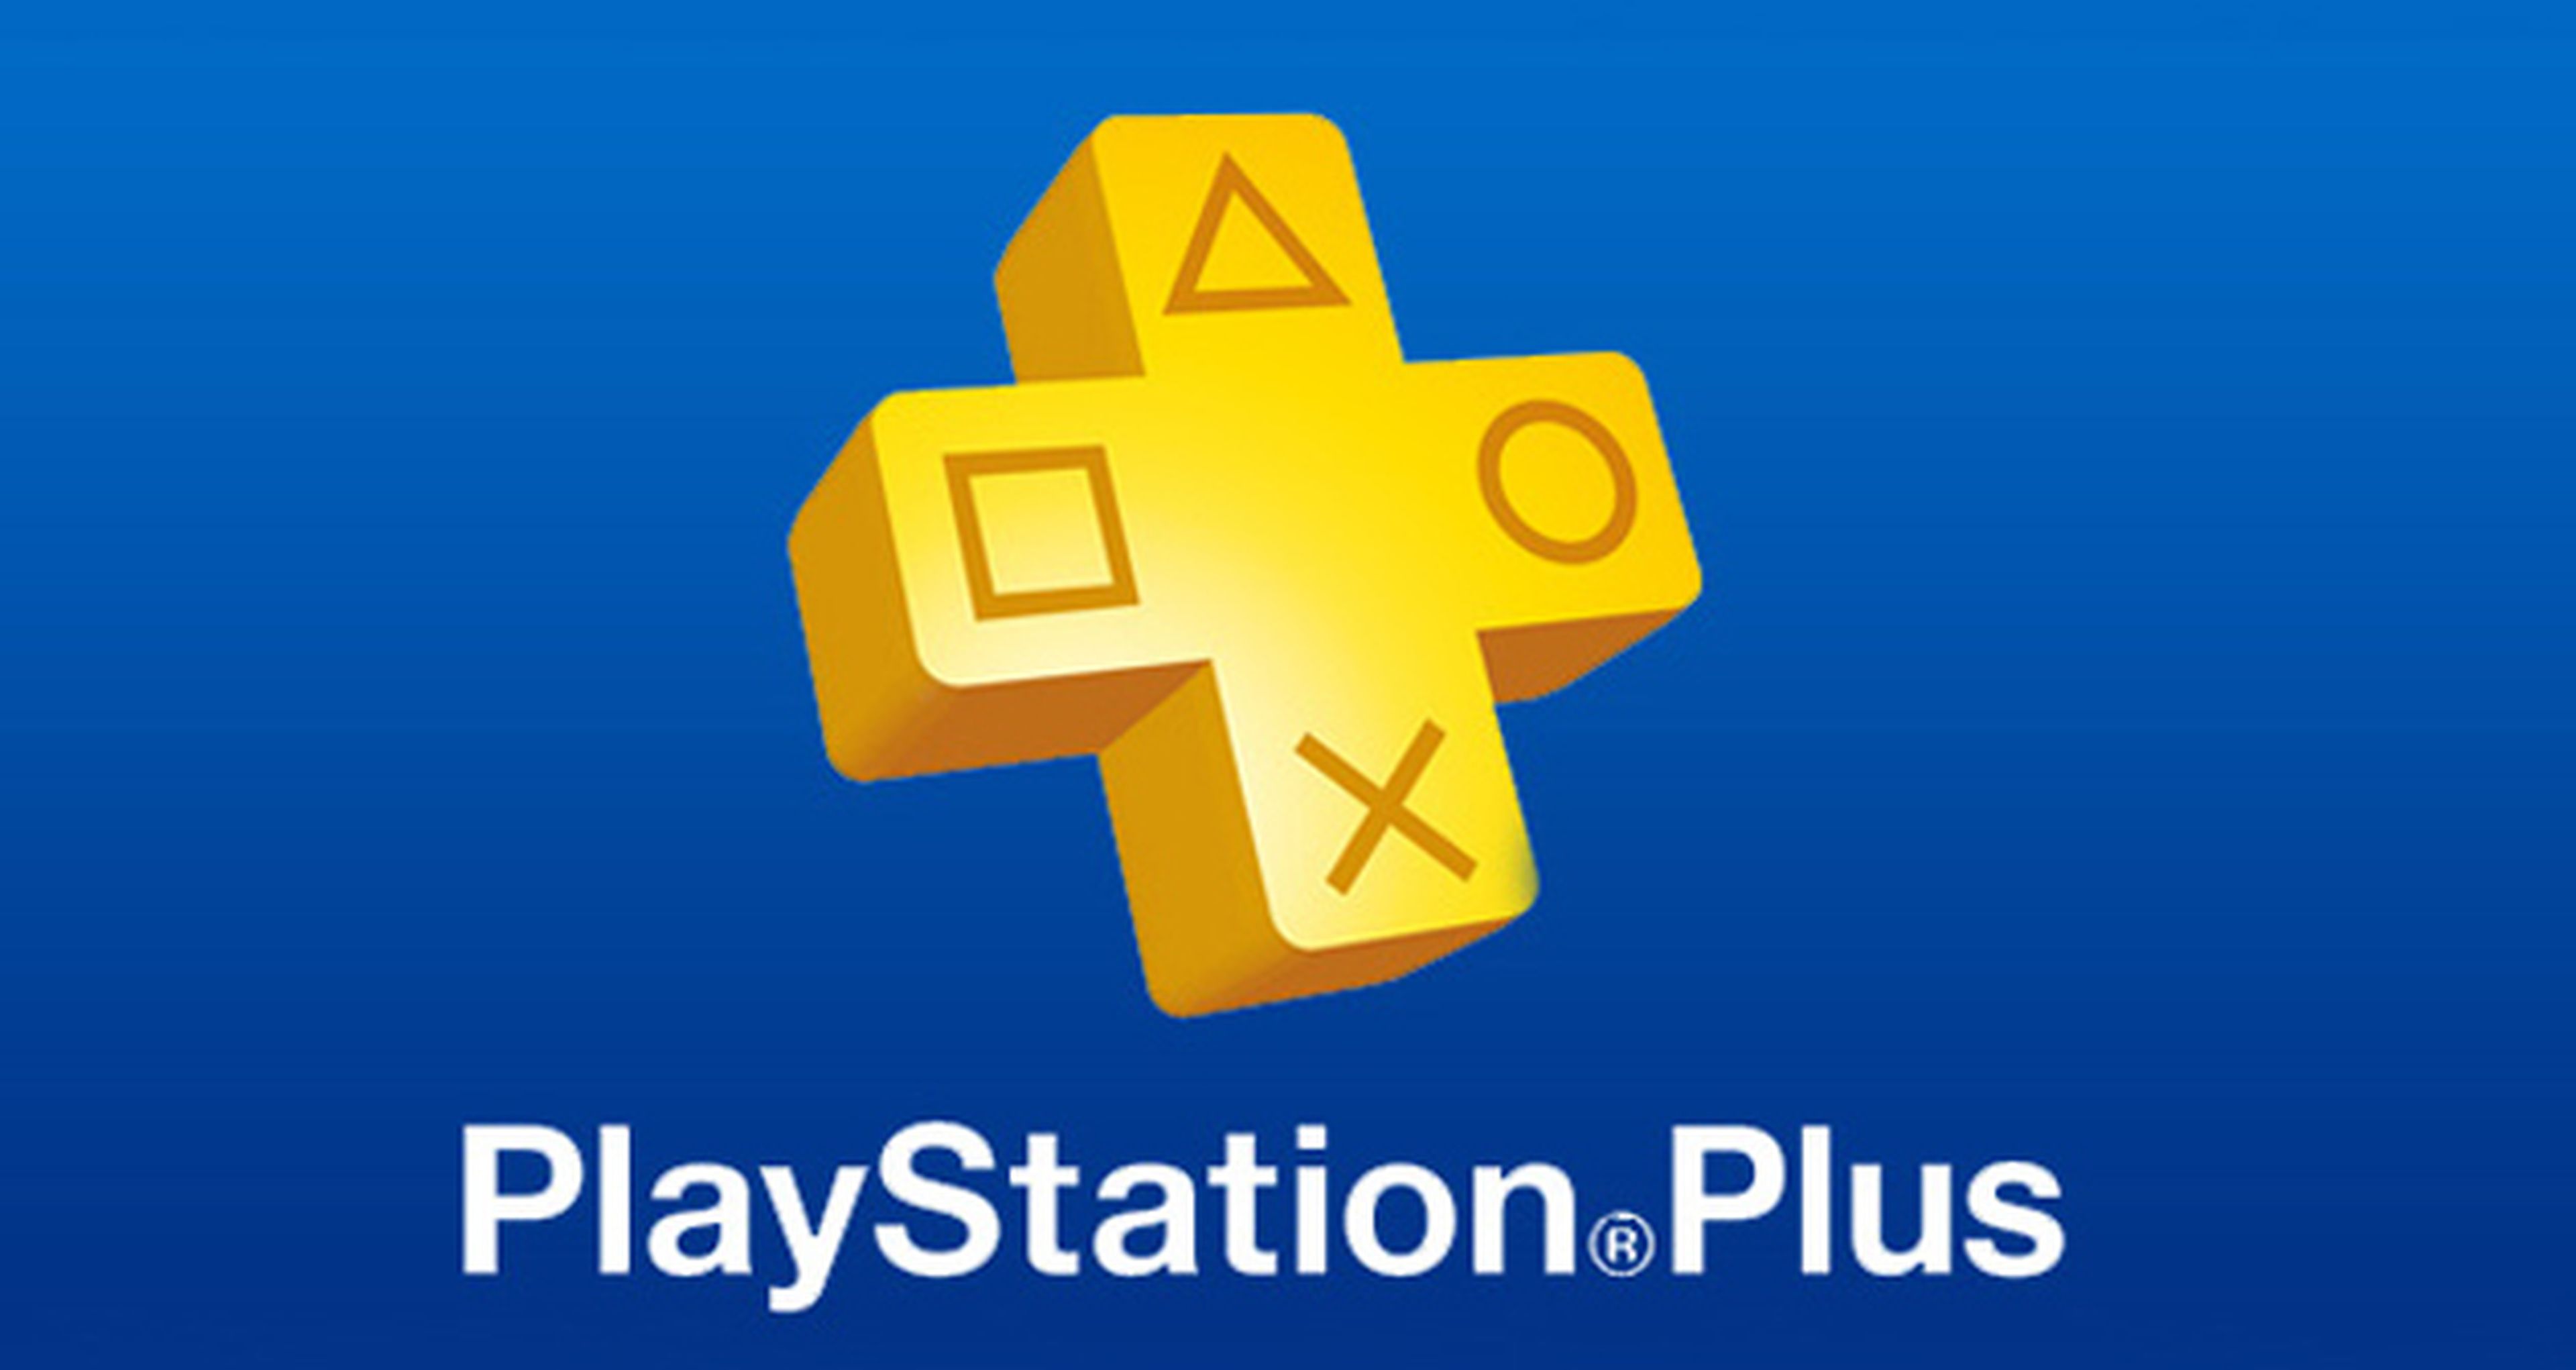 Llega el fin de semana de acceso gratuito a PlayStation Plus